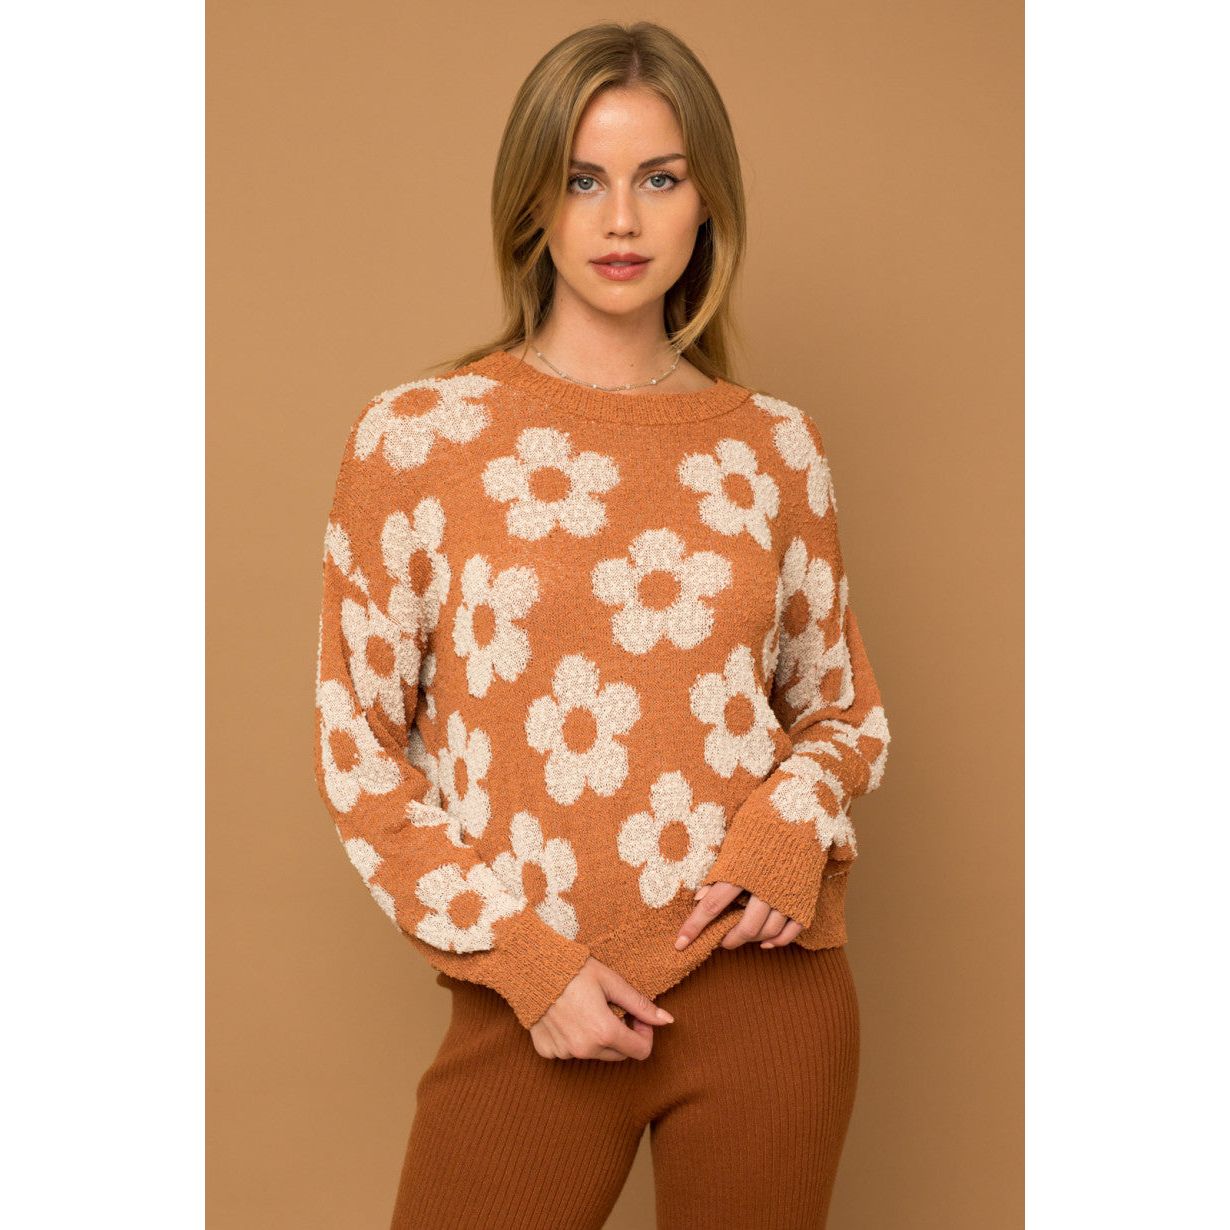 Autumn Orange Floral Sweater - Desert Dreams Boutique